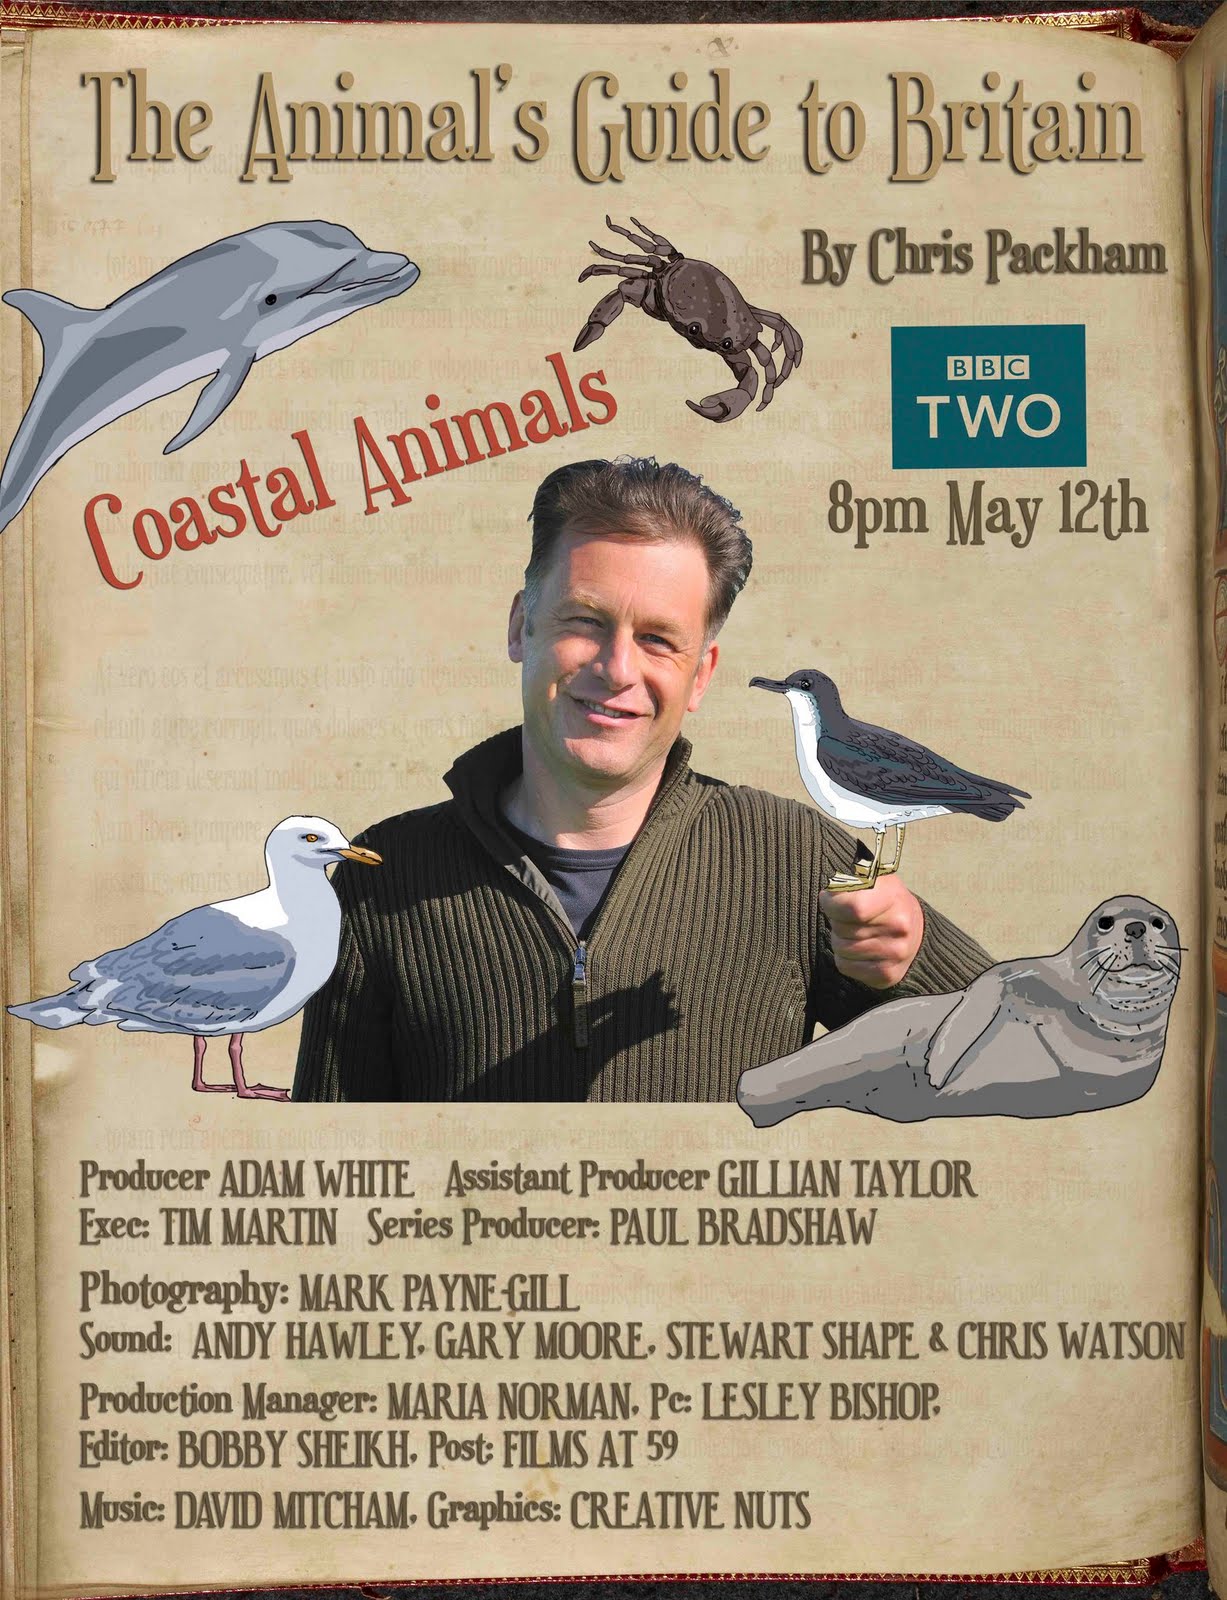 Coastal Animals with Chris Packham